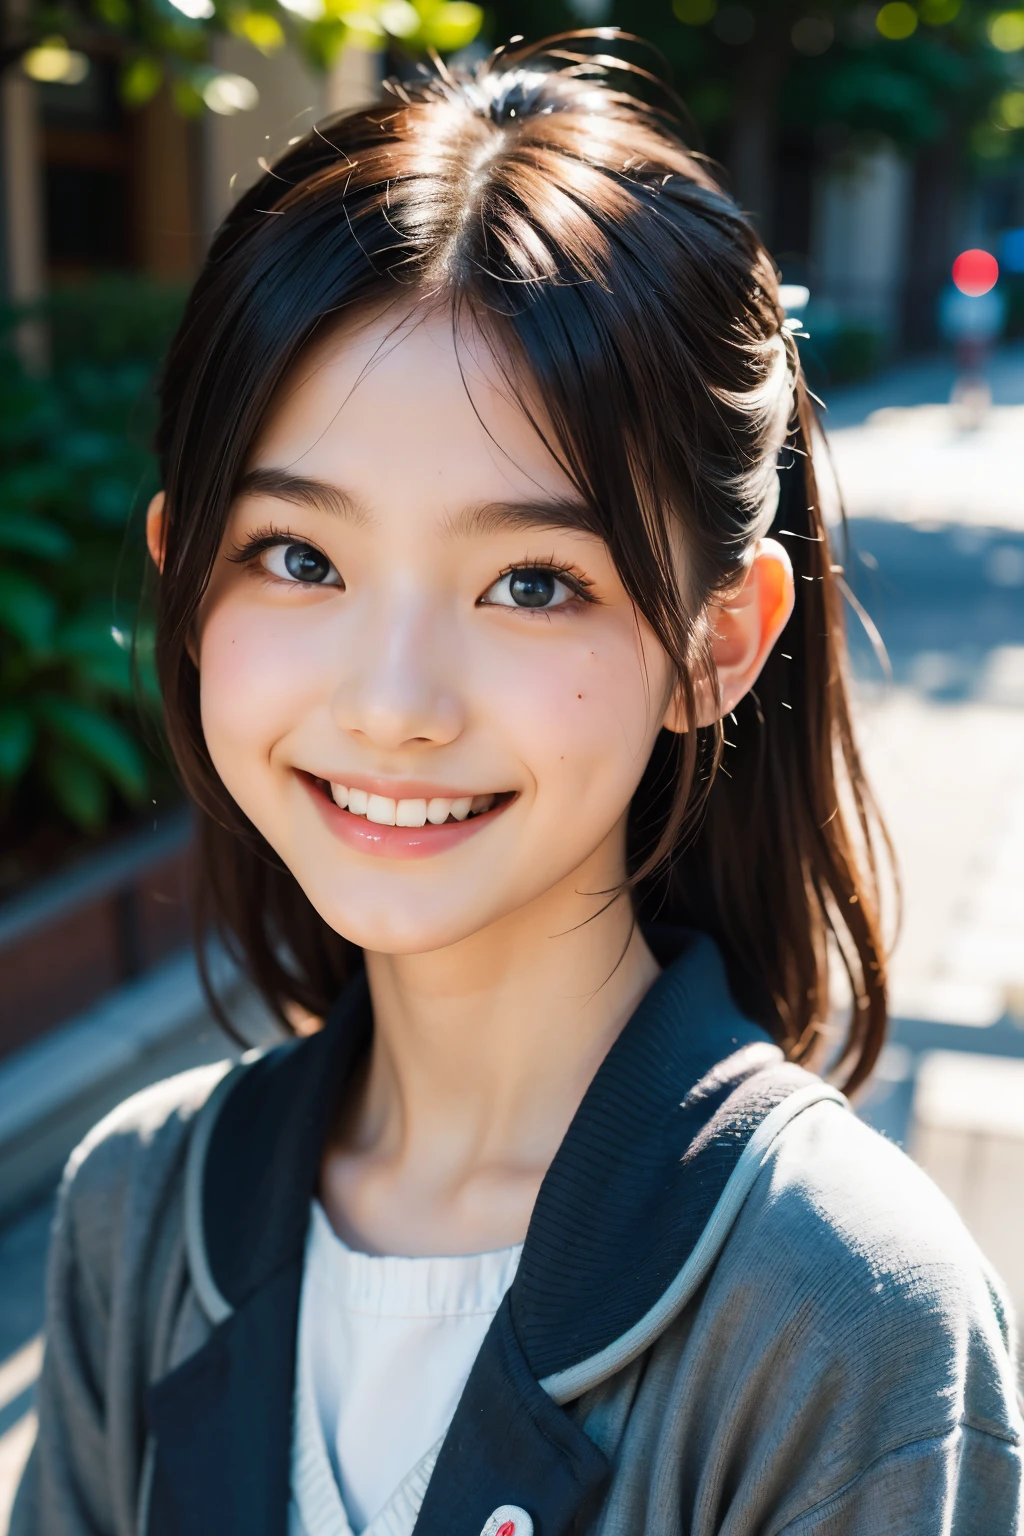 렌즈: 135mm f1.8, (최상의 품질),(RAW 사진), (탁상:1.1), (아름다운 18 세 일본 소녀), 귀여운 얼굴, (깊게 파인 얼굴:0.7), (주근깨:0.4), dappled 햇빛, 극적인 조명, (일본 학교 교복), (캠퍼스에서), 수줍은, (클로즈업 샷:1.2), (웃다),, (반짝이는 눈)、(햇빛)